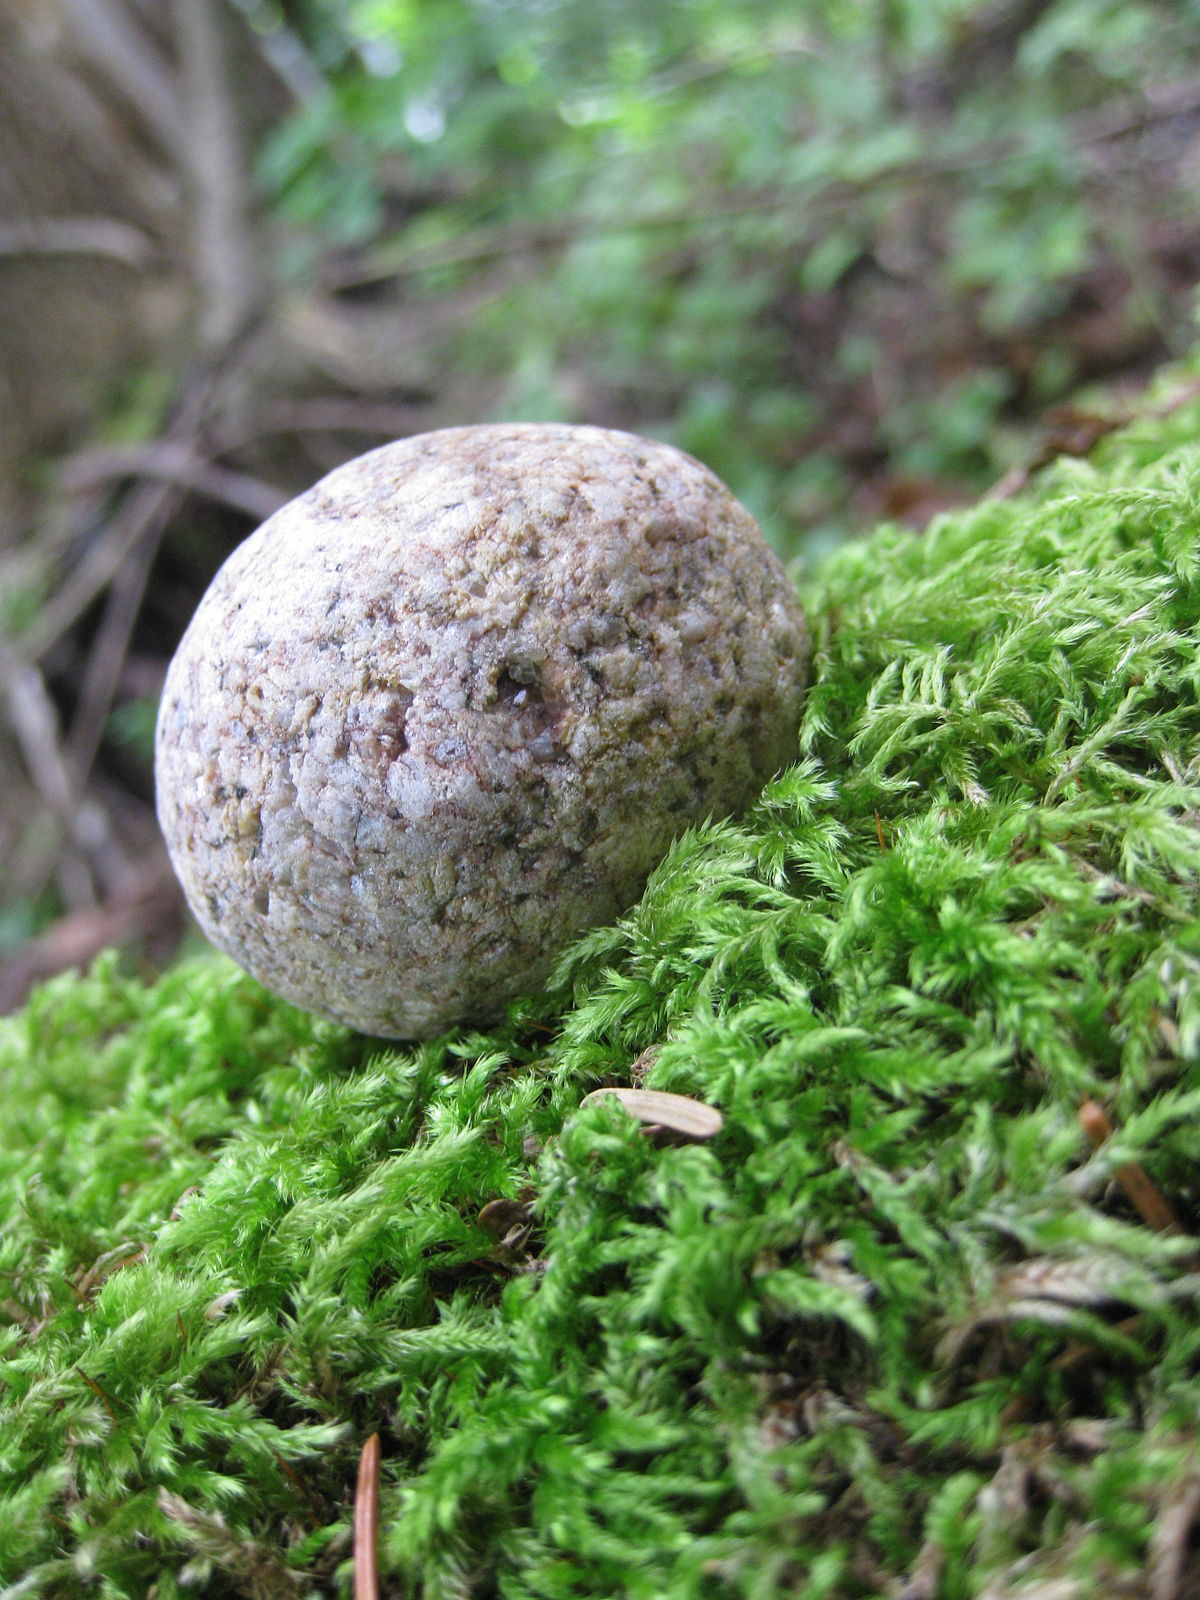 A rolling stone gathers no moss - Wikipedia